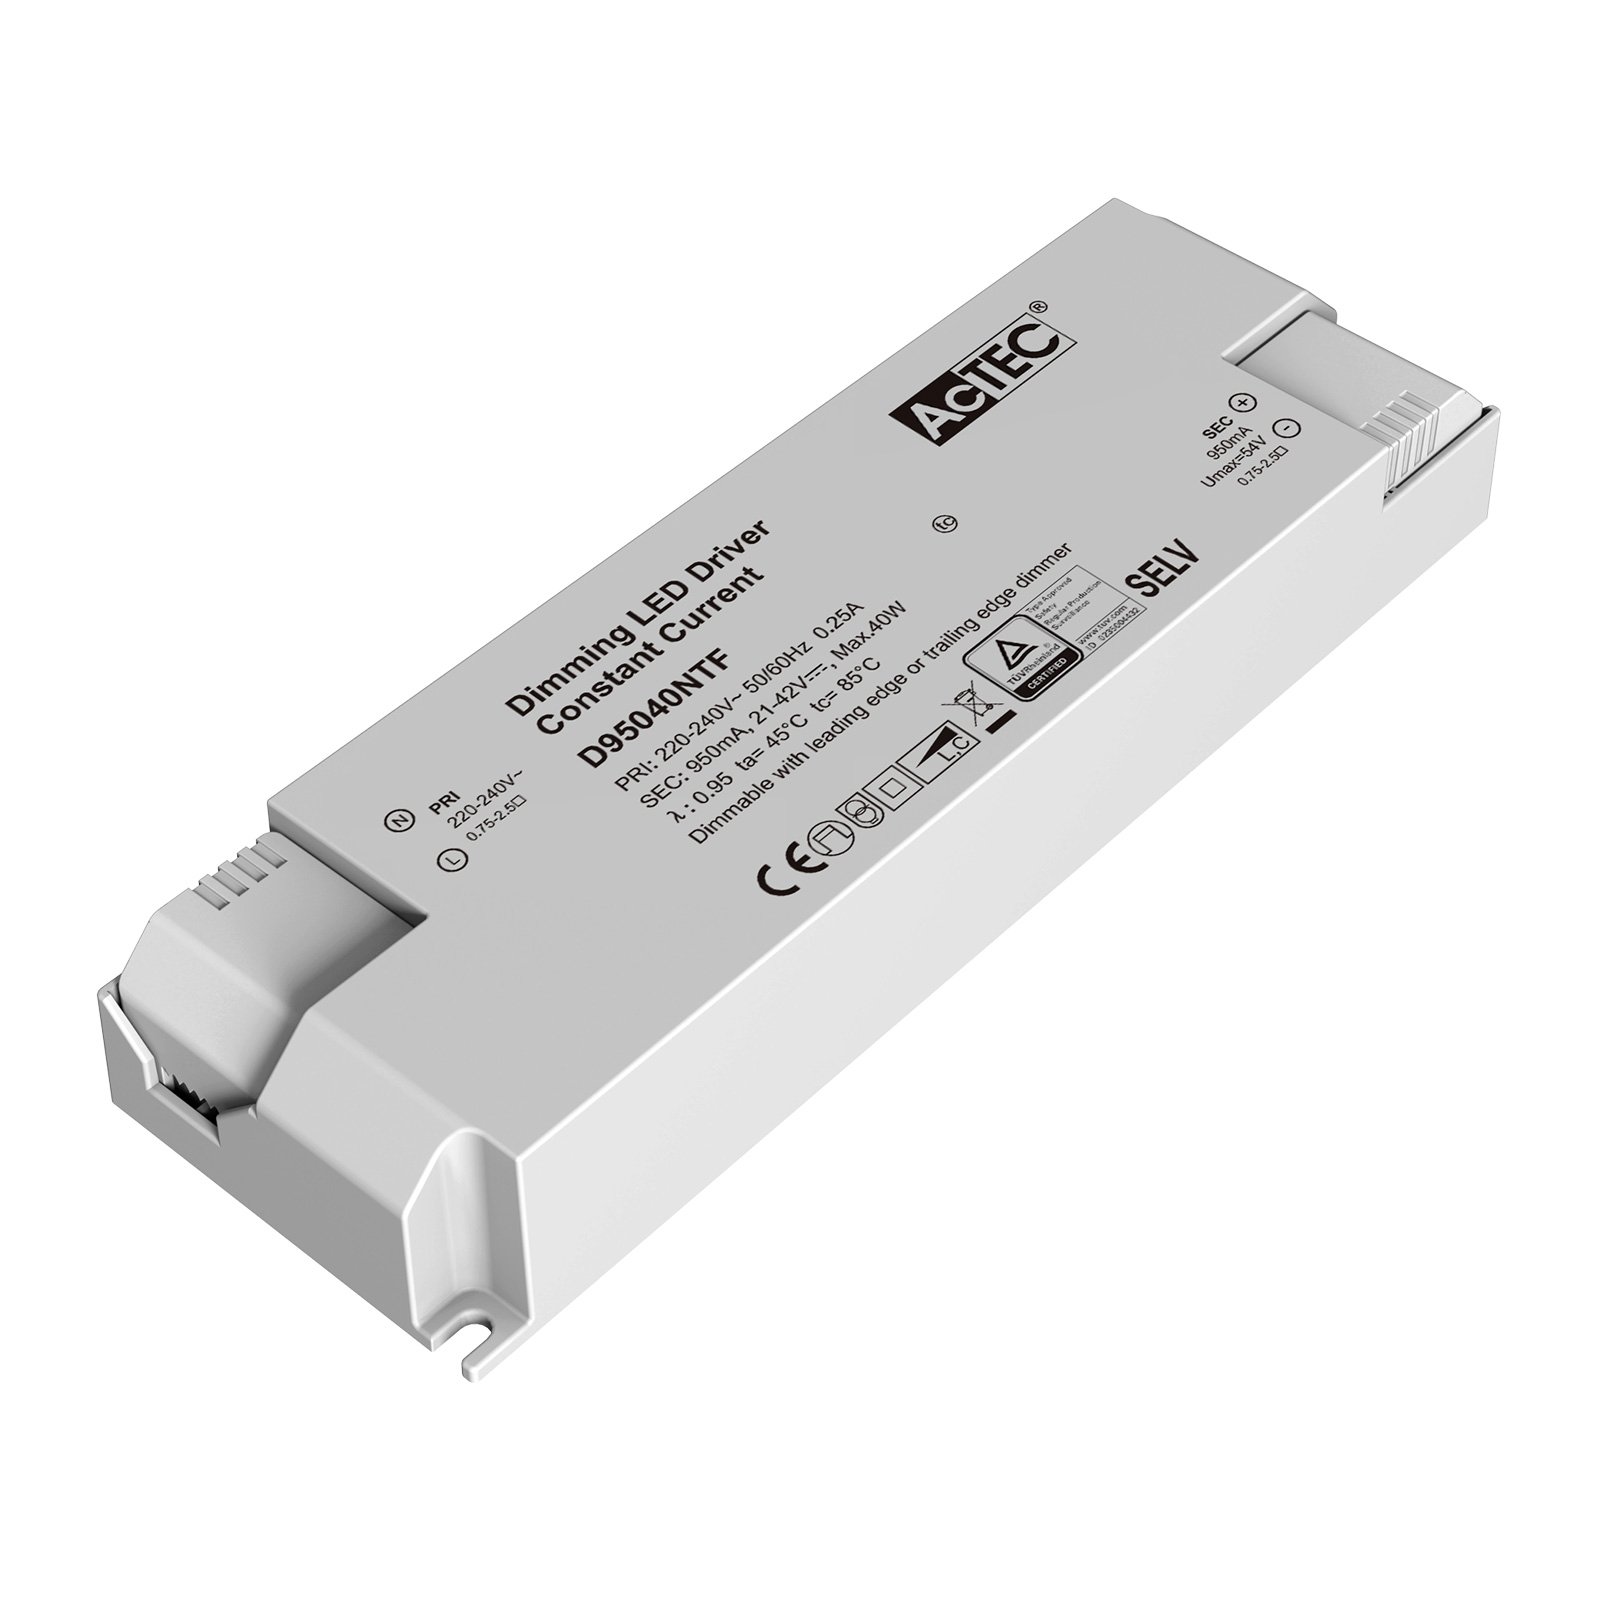 AcTEC Triac driver LED CC max. 40W 950mA